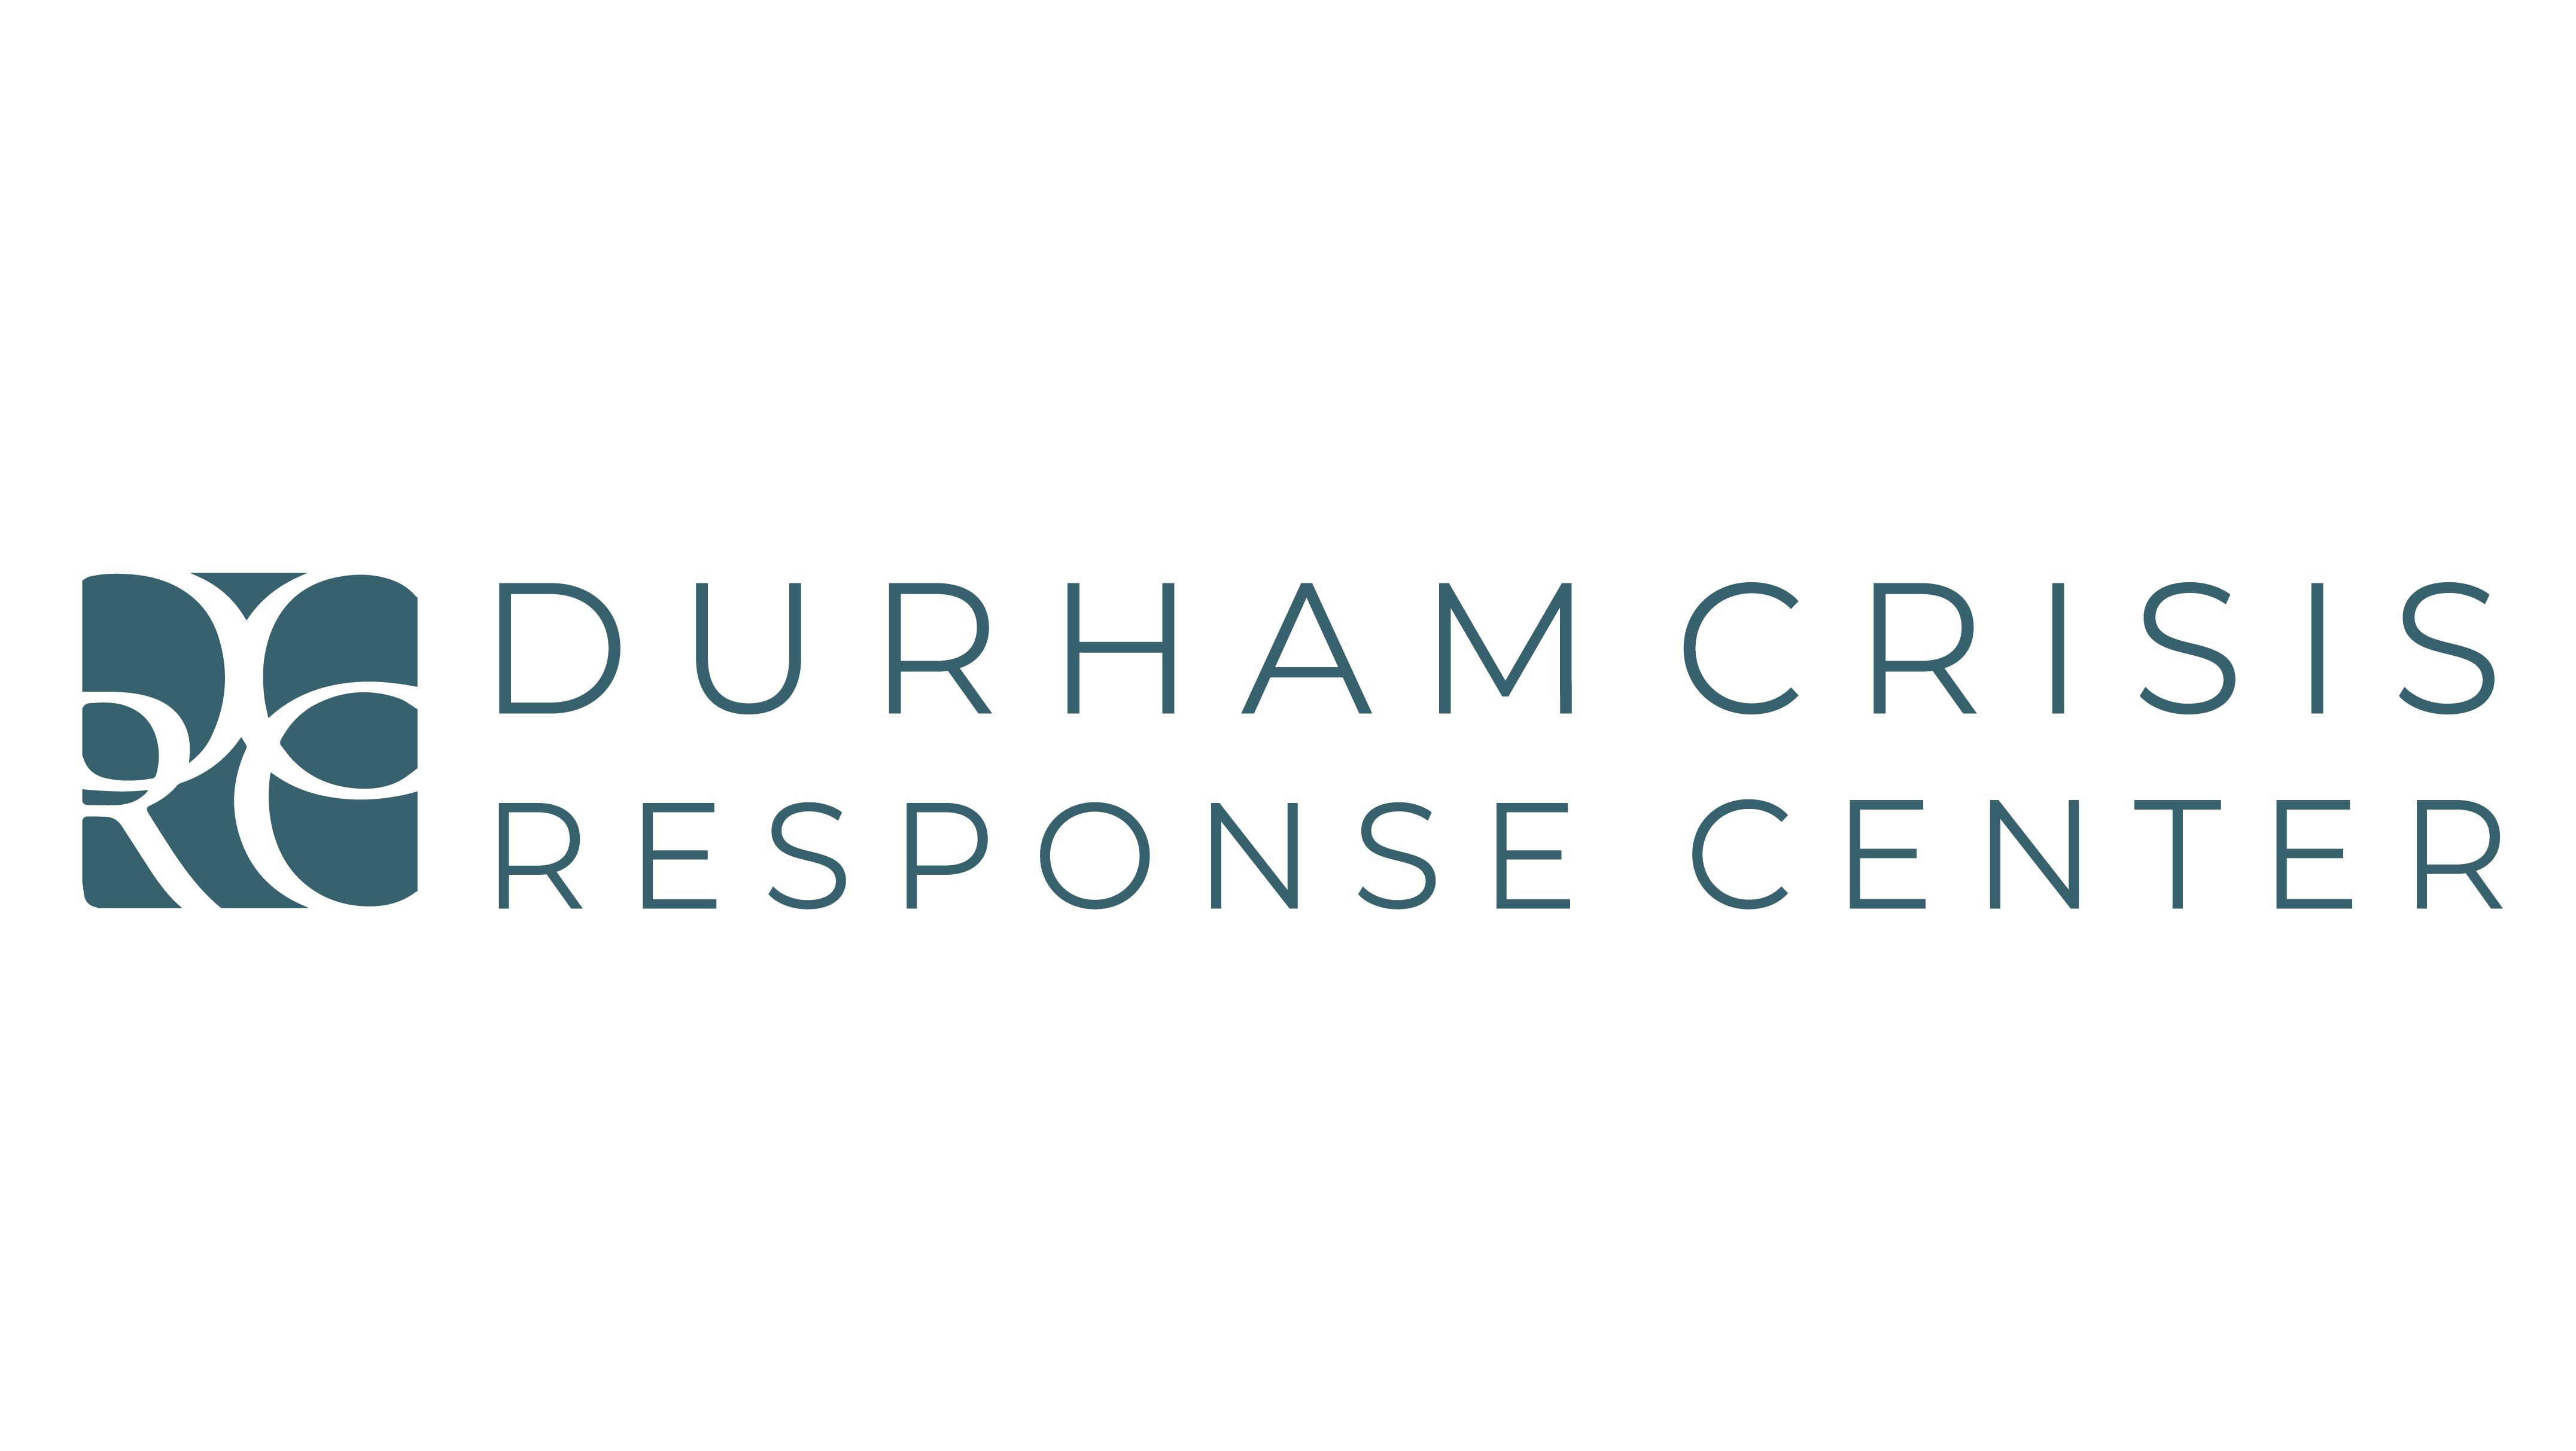 Durham Crisis Response Center